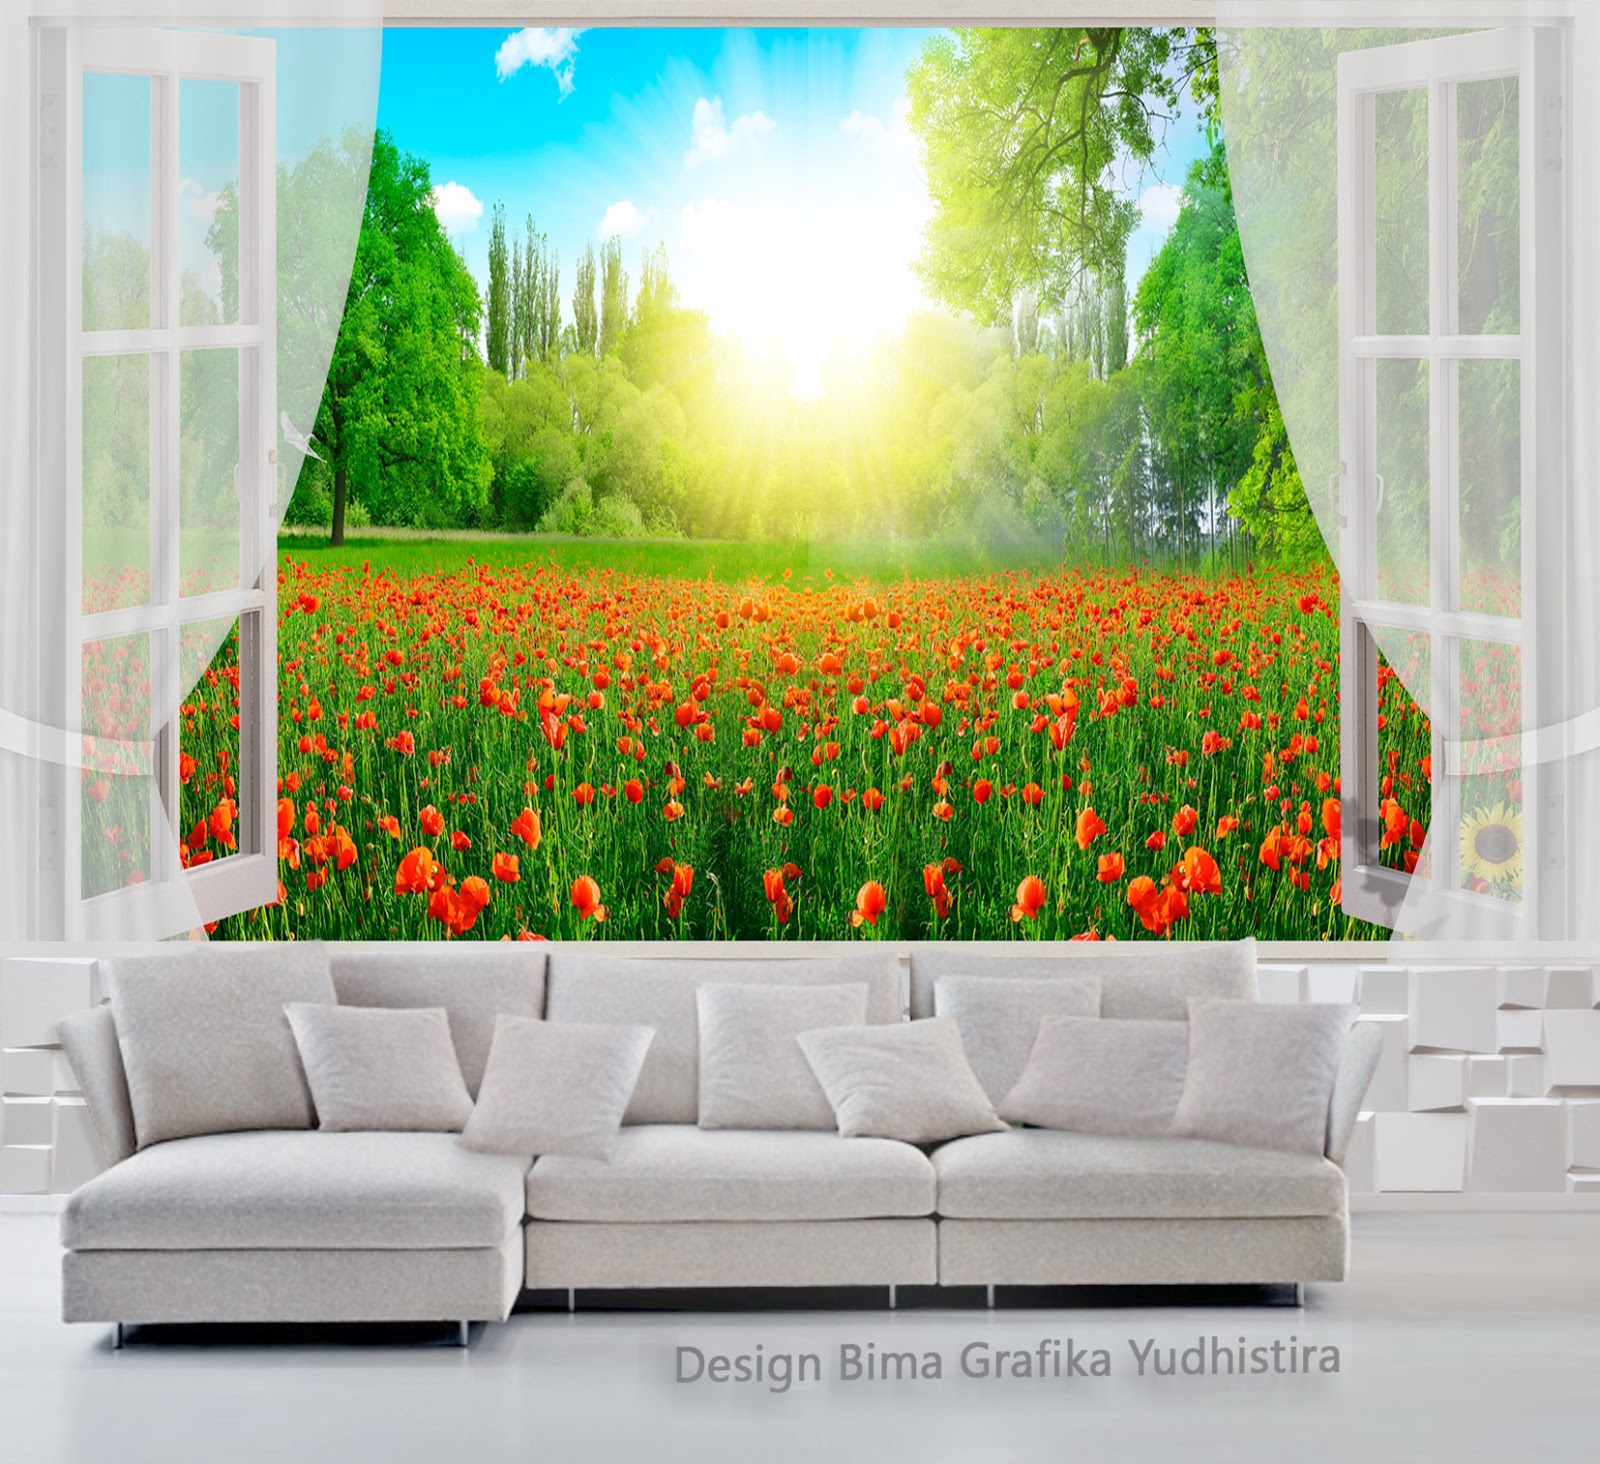 carta da parati dinding 3d,natura,paesaggio naturale,verde,arte moderna,murale